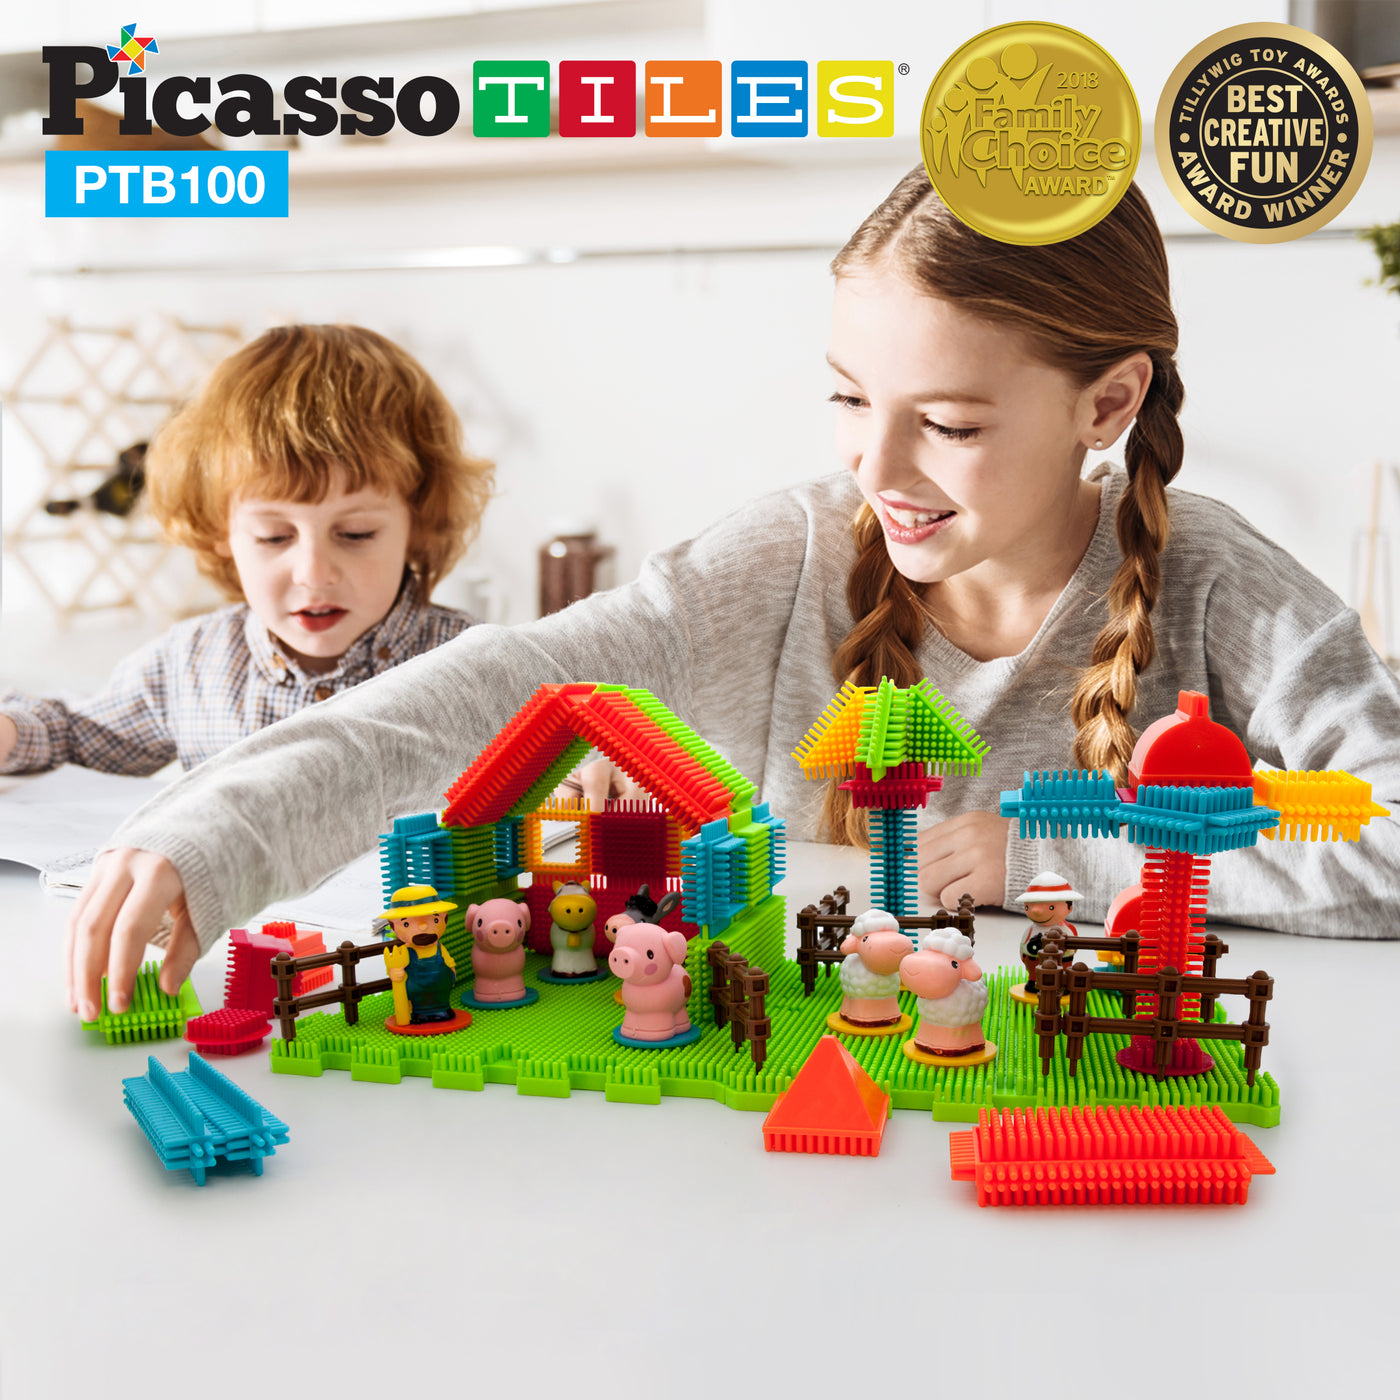 PicassoTiles Soft Building Blocks Hedgehog Farm Set